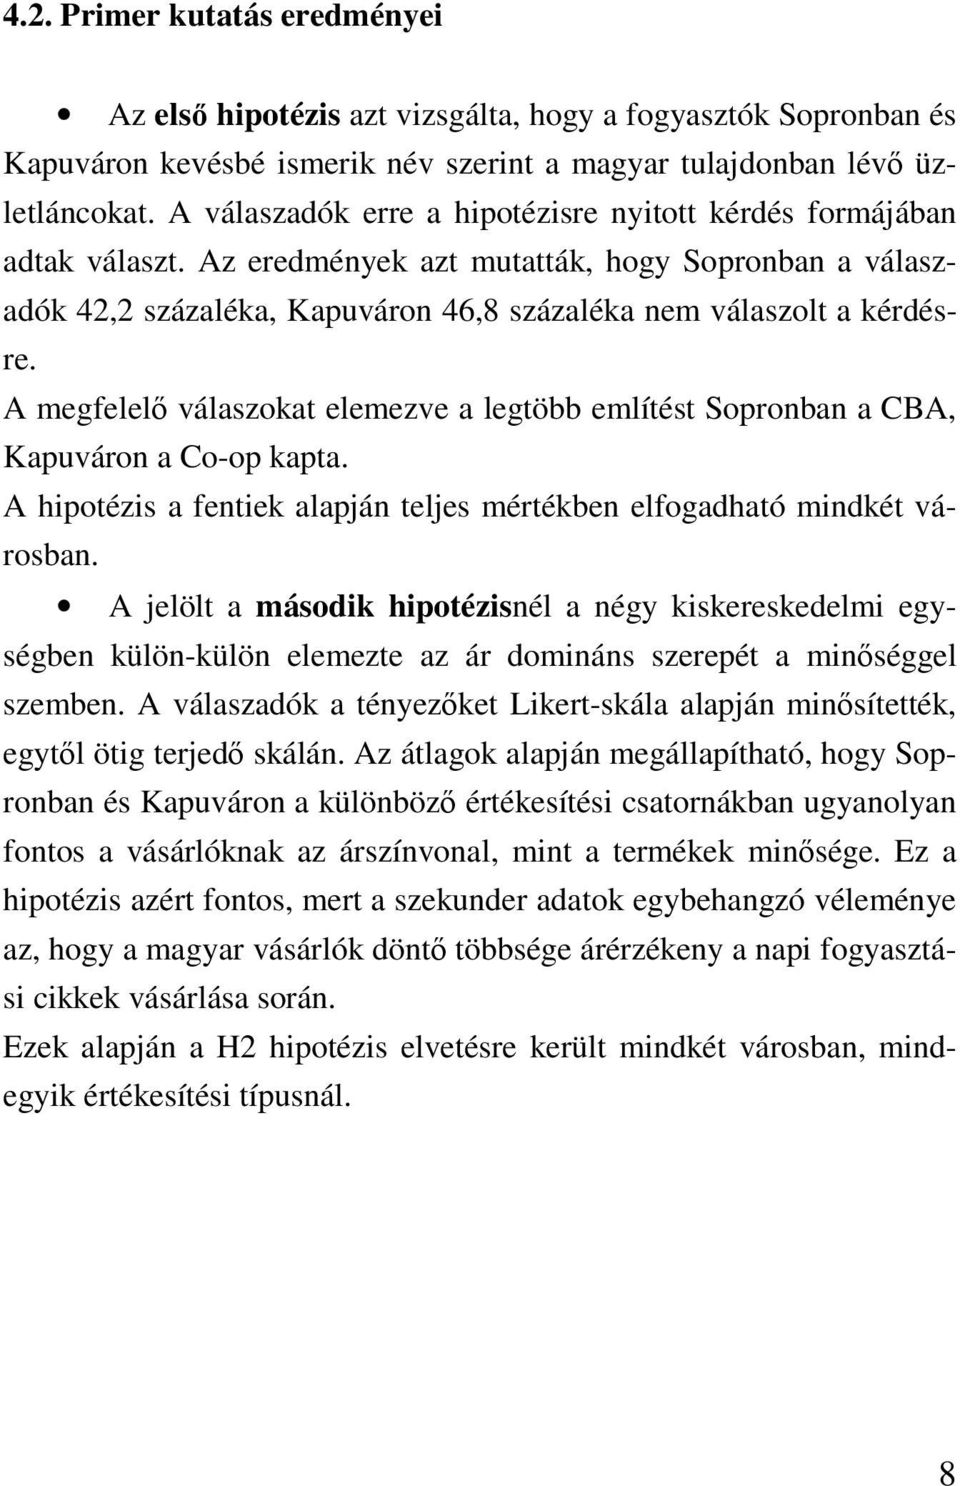 A megfelel válaszokat elemezve a legtöbb említést Sopronban a CBA, Kapuváron a Co-op kapta. A hipotézis a fentiek alapján teljes mértékben elfogadható mindkét városban.